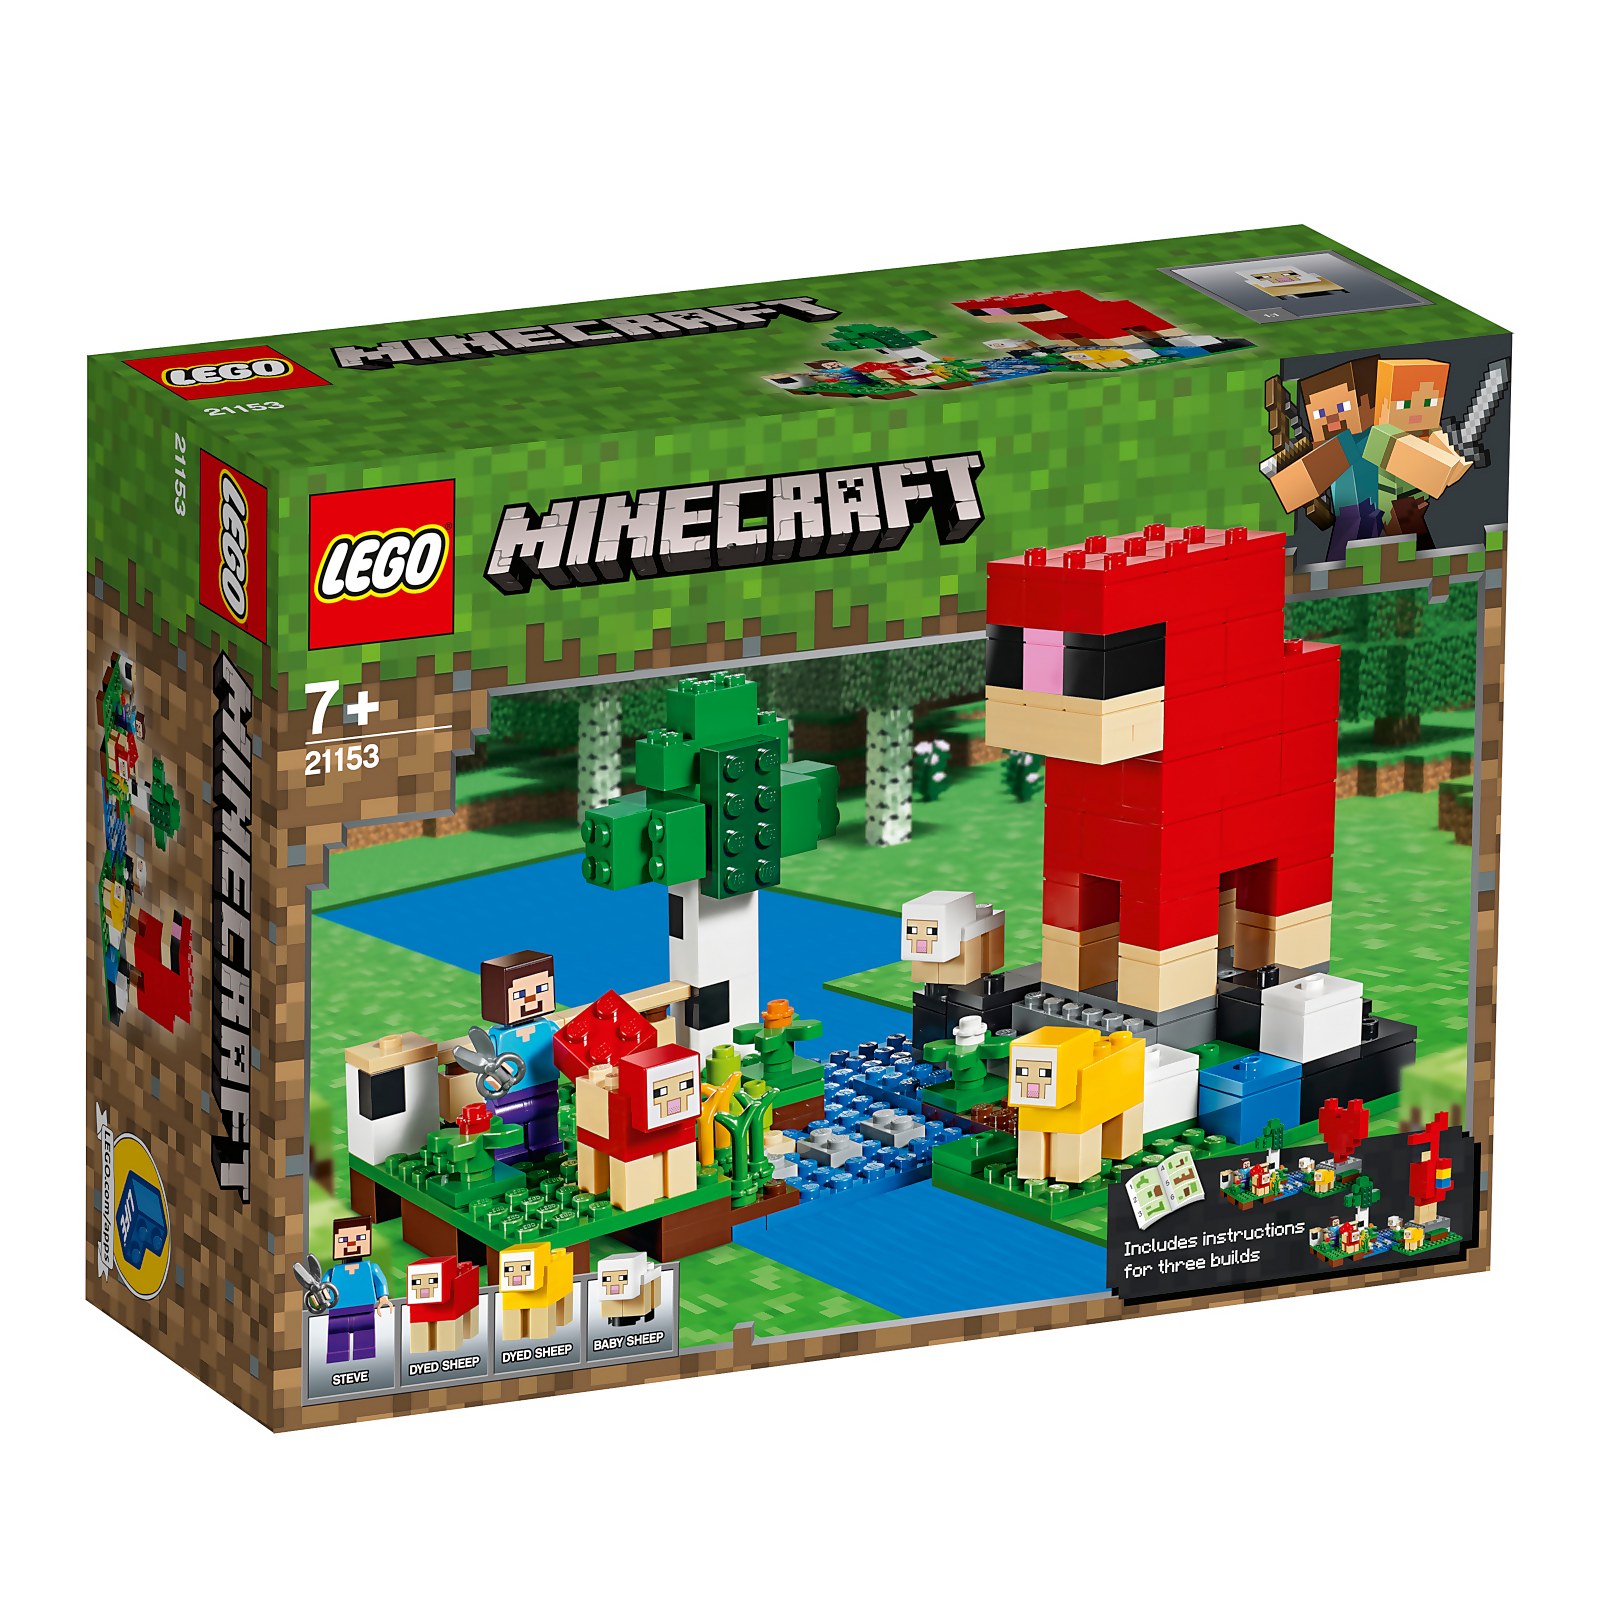 LEGO Minecraft: The Wool Farm Building Set (21153)